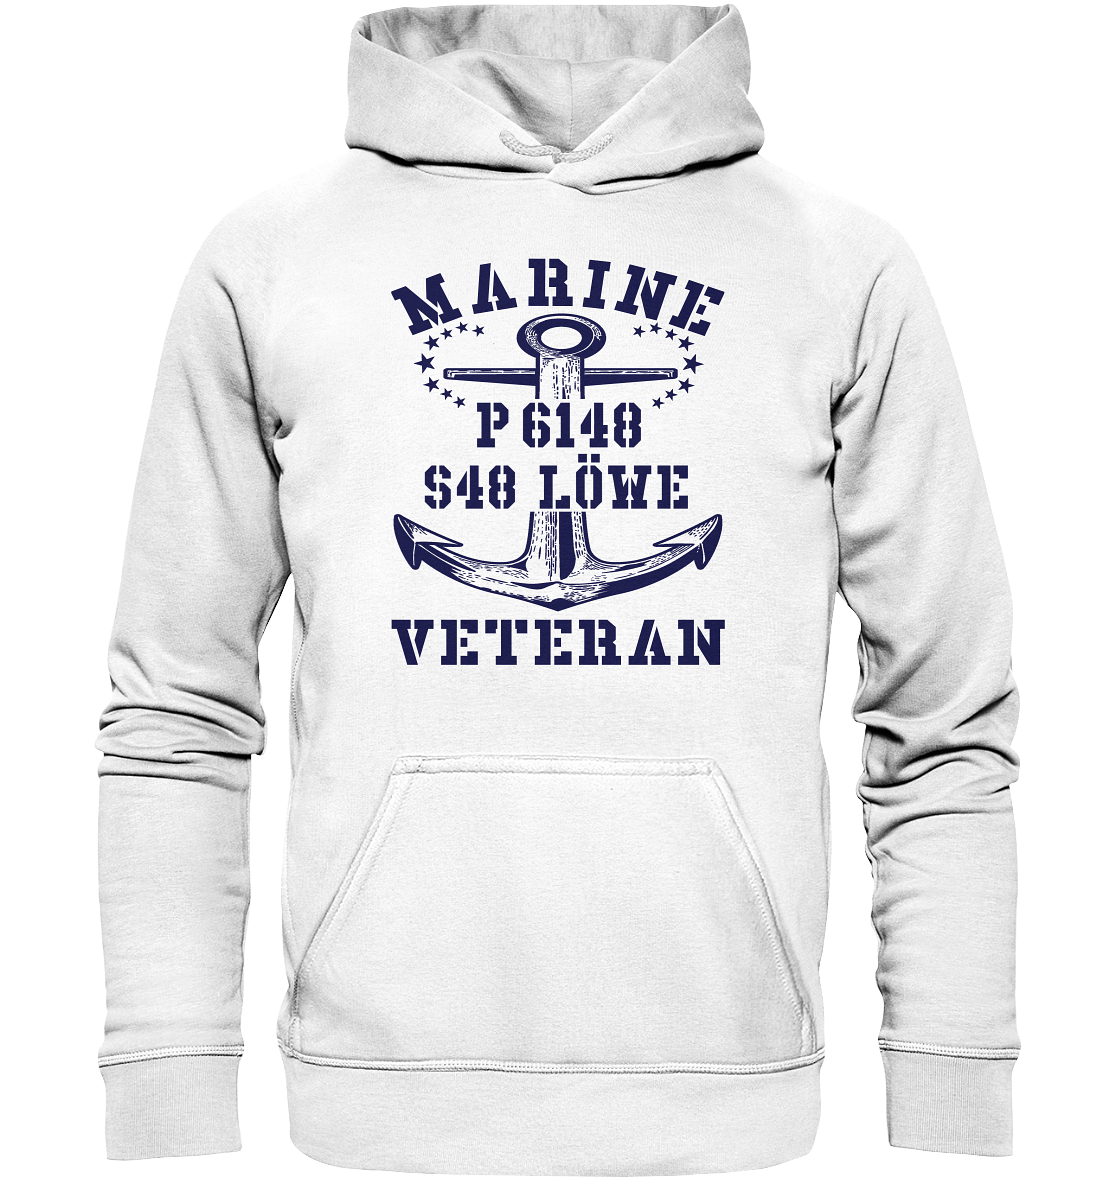 P6148 S48 LÖWE Marine Veteran - Basic Unisex Hoodie